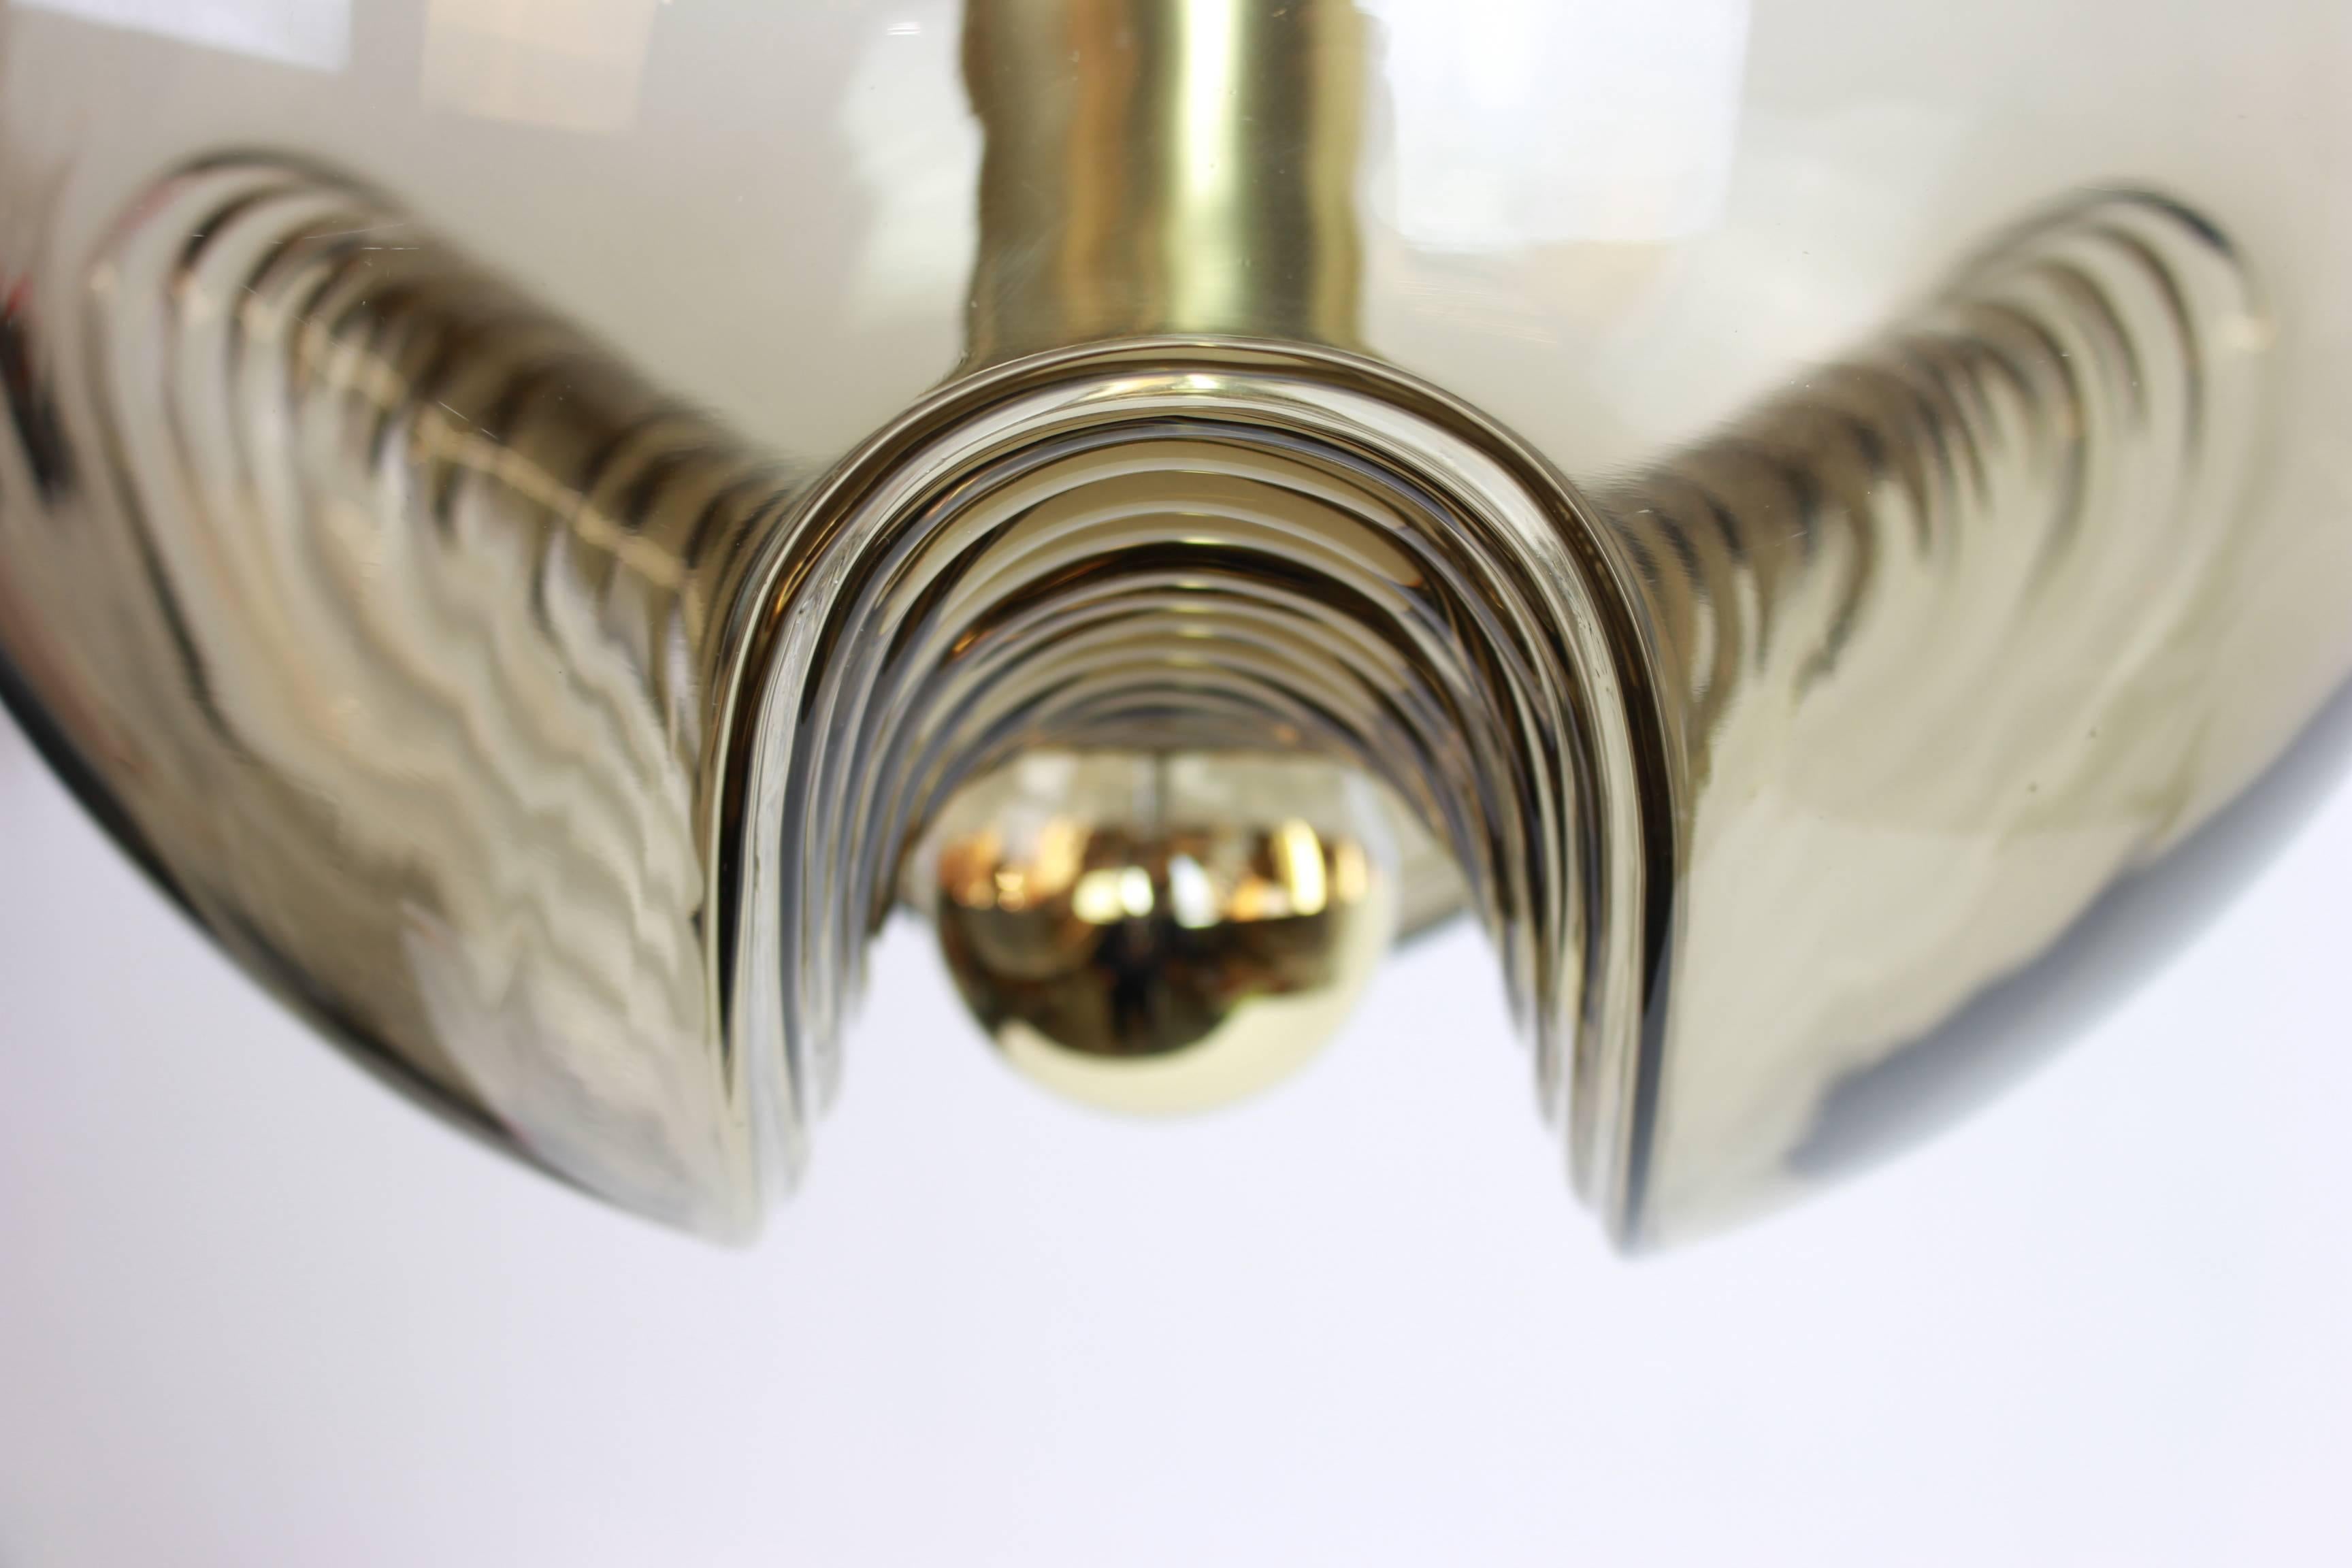 Un pendentif rond spécial en verre fumé biomorphe conçu par Koch & Lowy pour Peill & Putzler, fabriqué en Allemagne, vers les années 1970.

Douilles : 1 x ampoule standard E27. (100 W max).

La tige de chute peut être ajustée gratuitement selon les